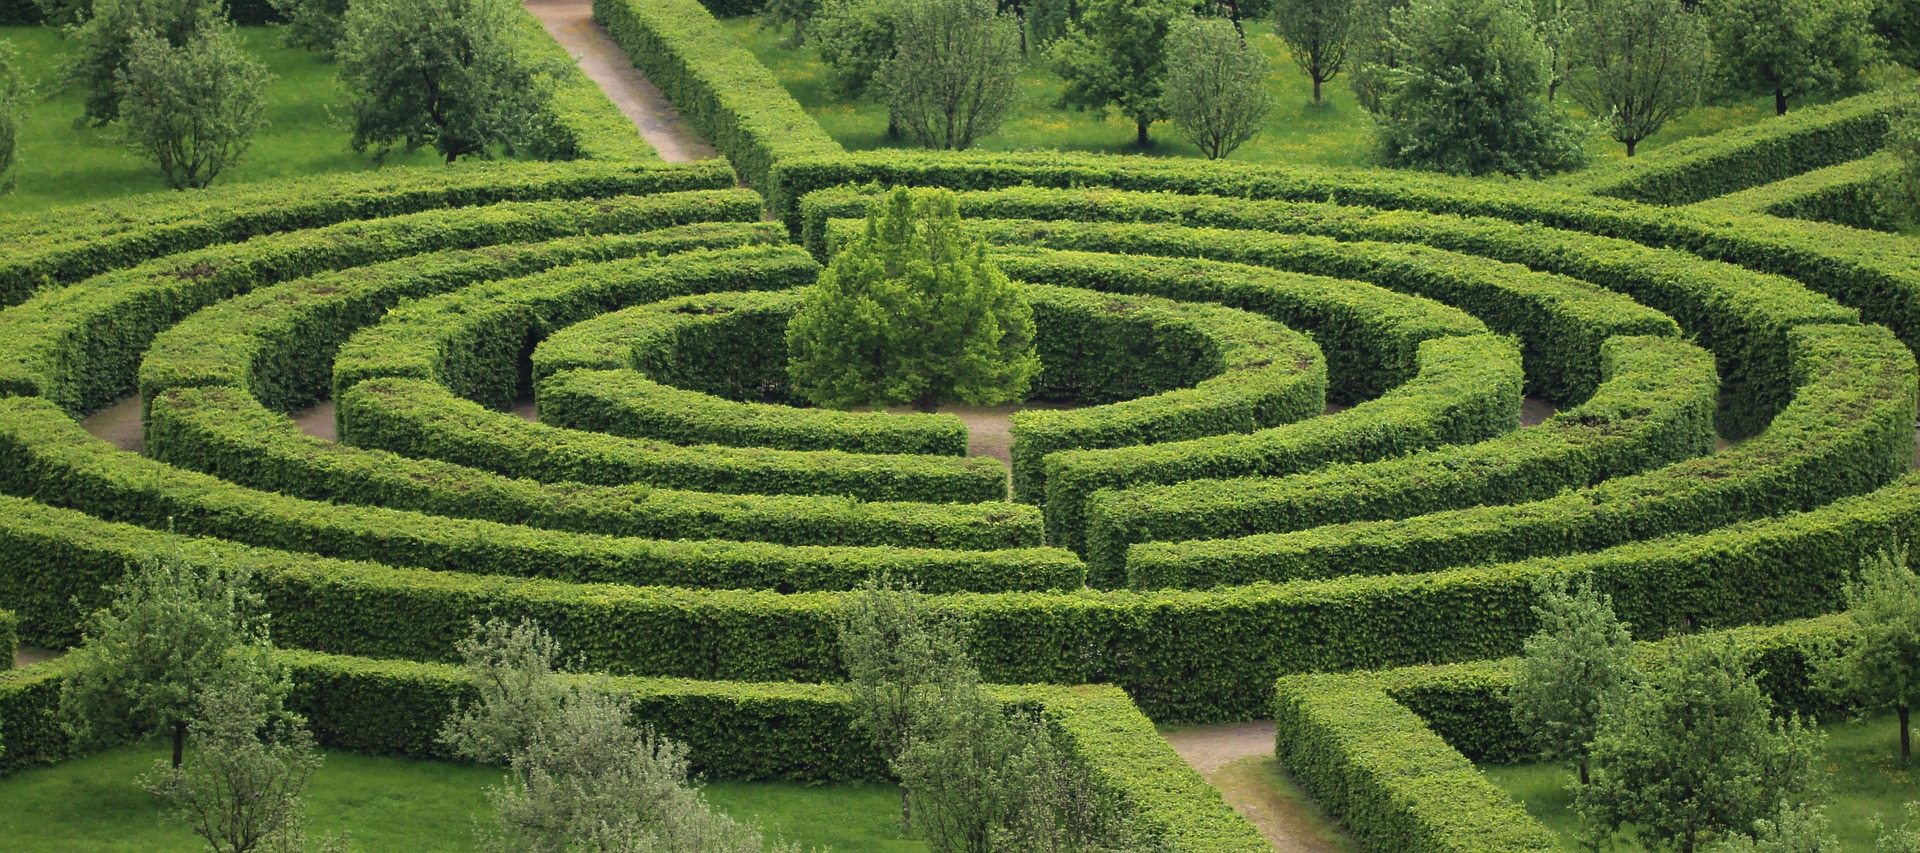 A garden Maze